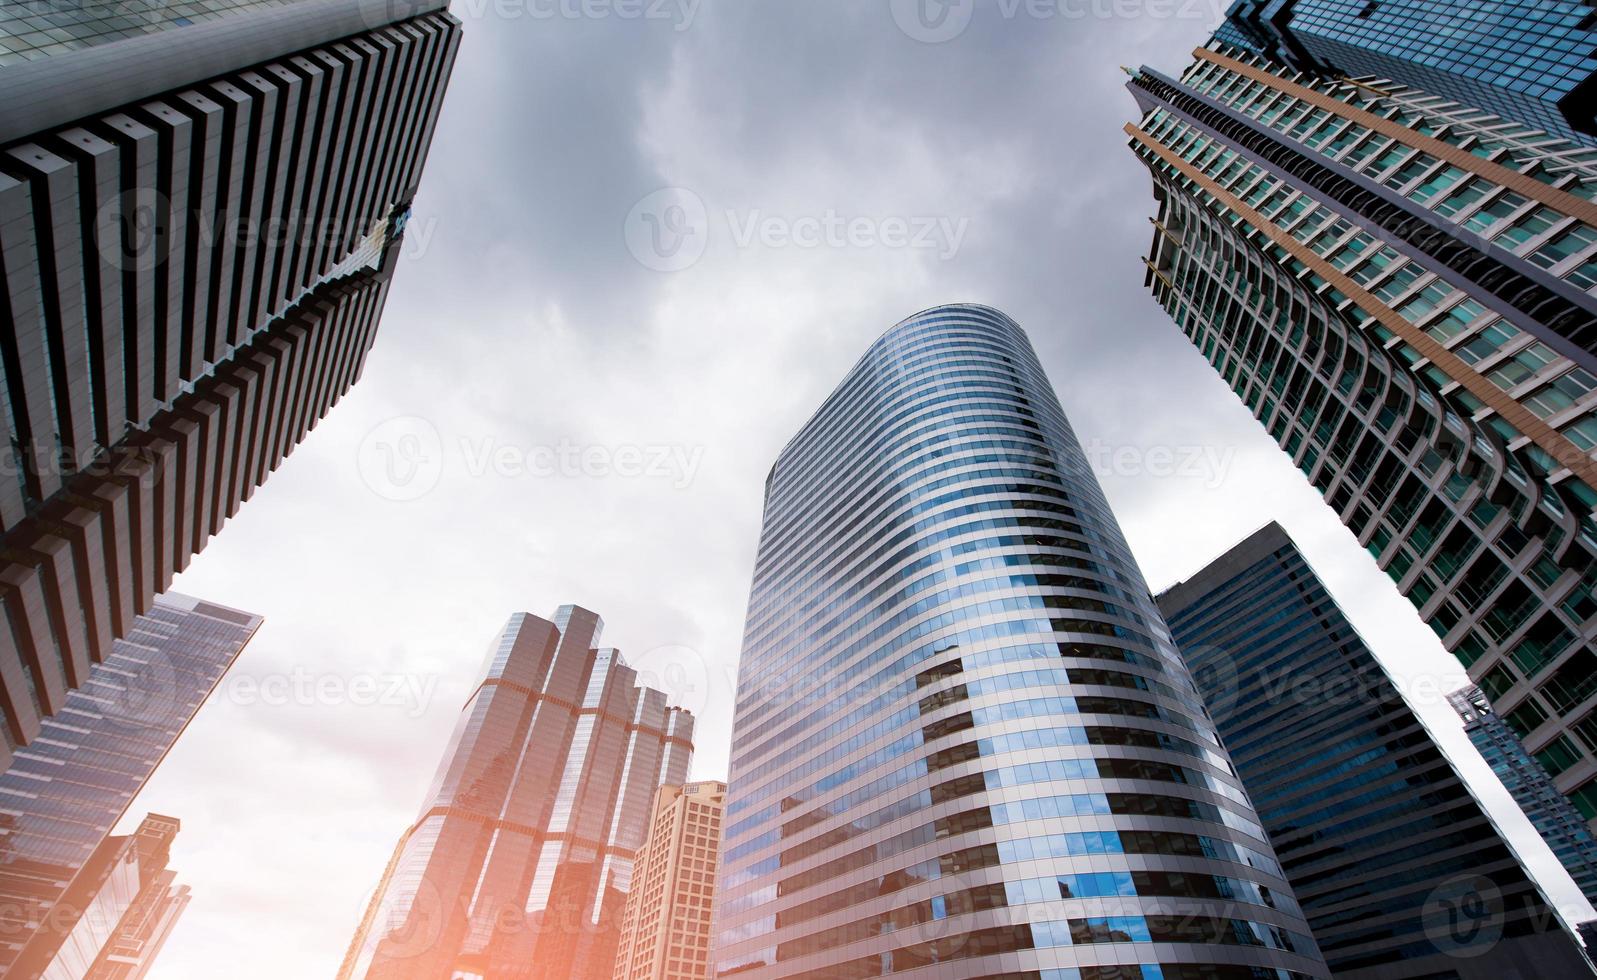 gewöhnliche moderne Geschäftswolkenkratzer, Hochhäuser, Architektur, die in den Himmel ragt. Konzepte der Finanz- und Wirtschaftswissenschaften. foto